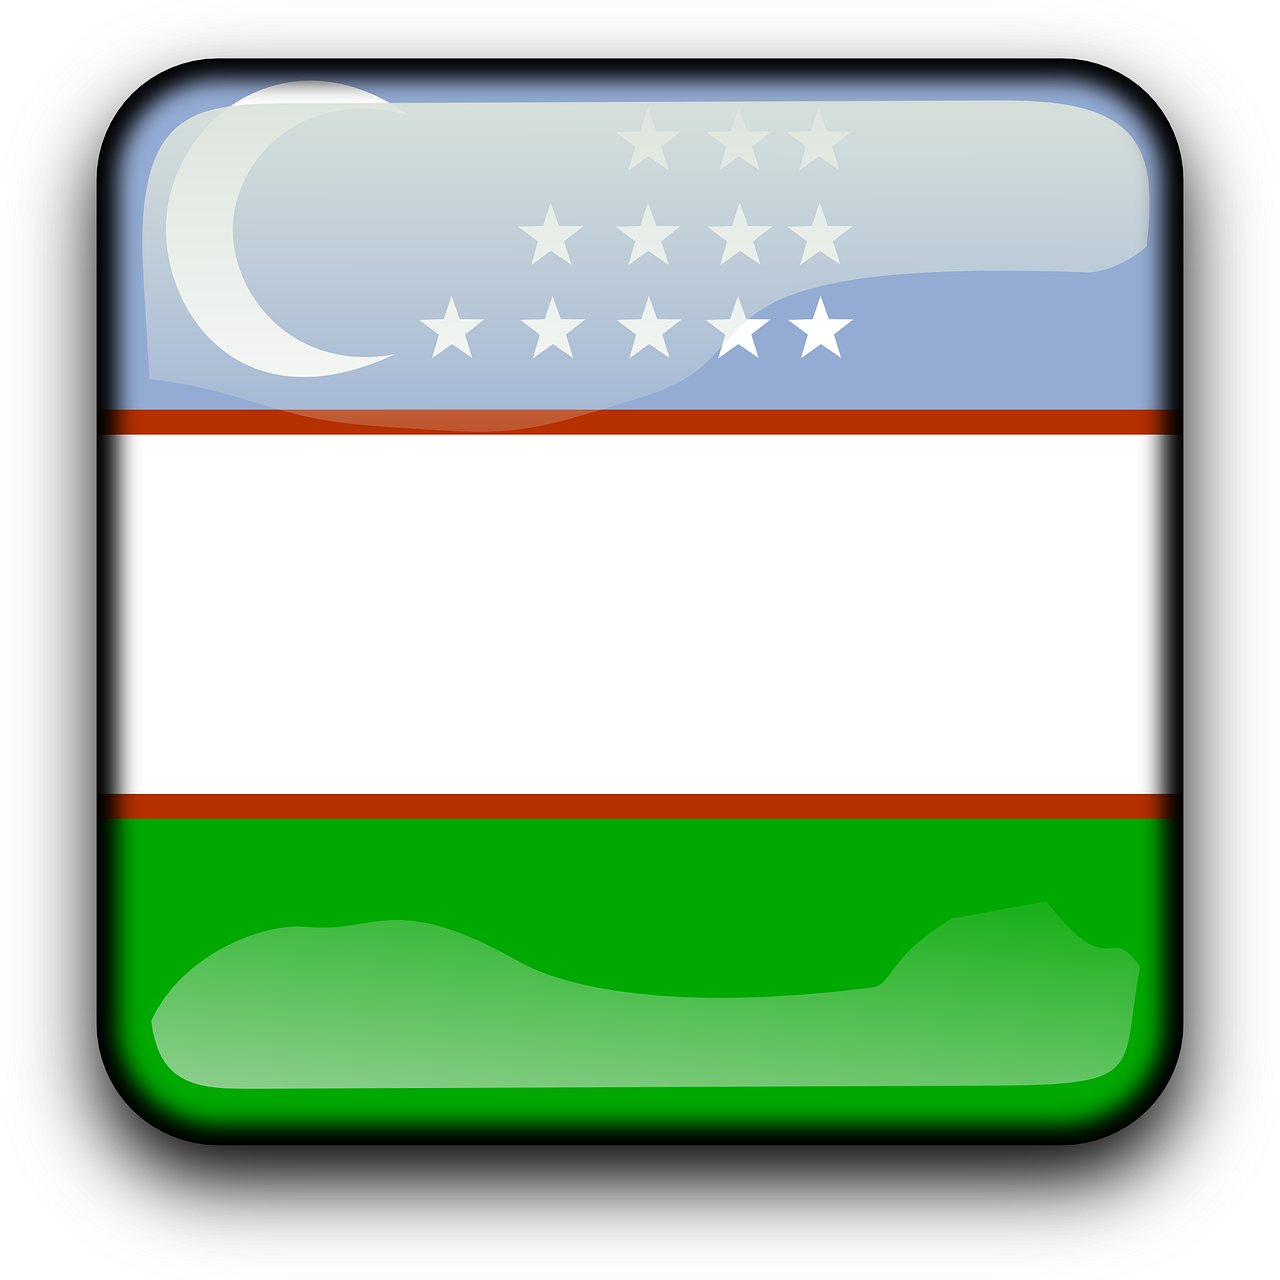 uzbekistan flag country free photo